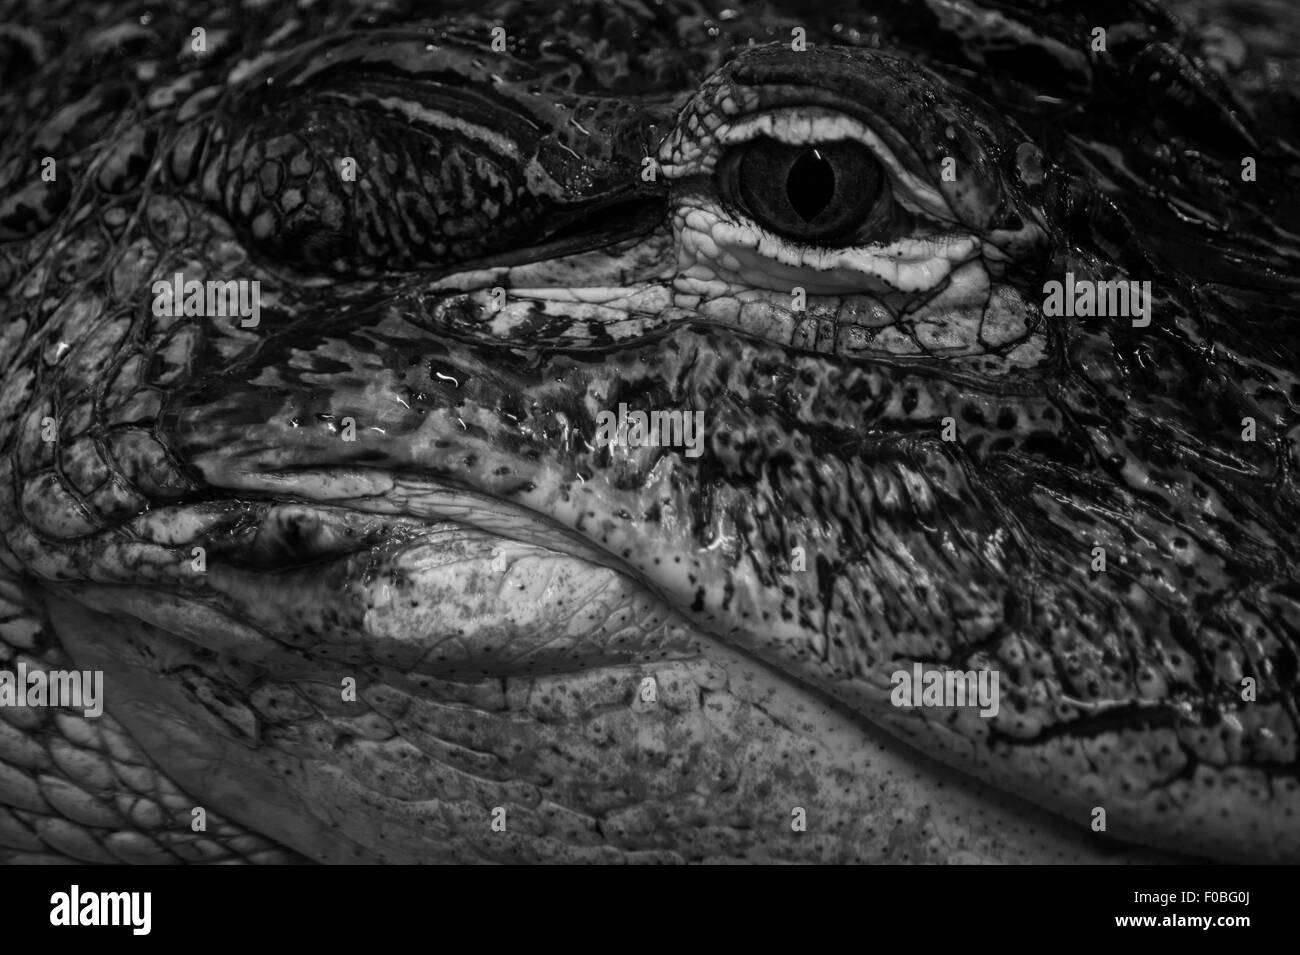 Captive alligator Black and White Stock Photos & Images - Alamy